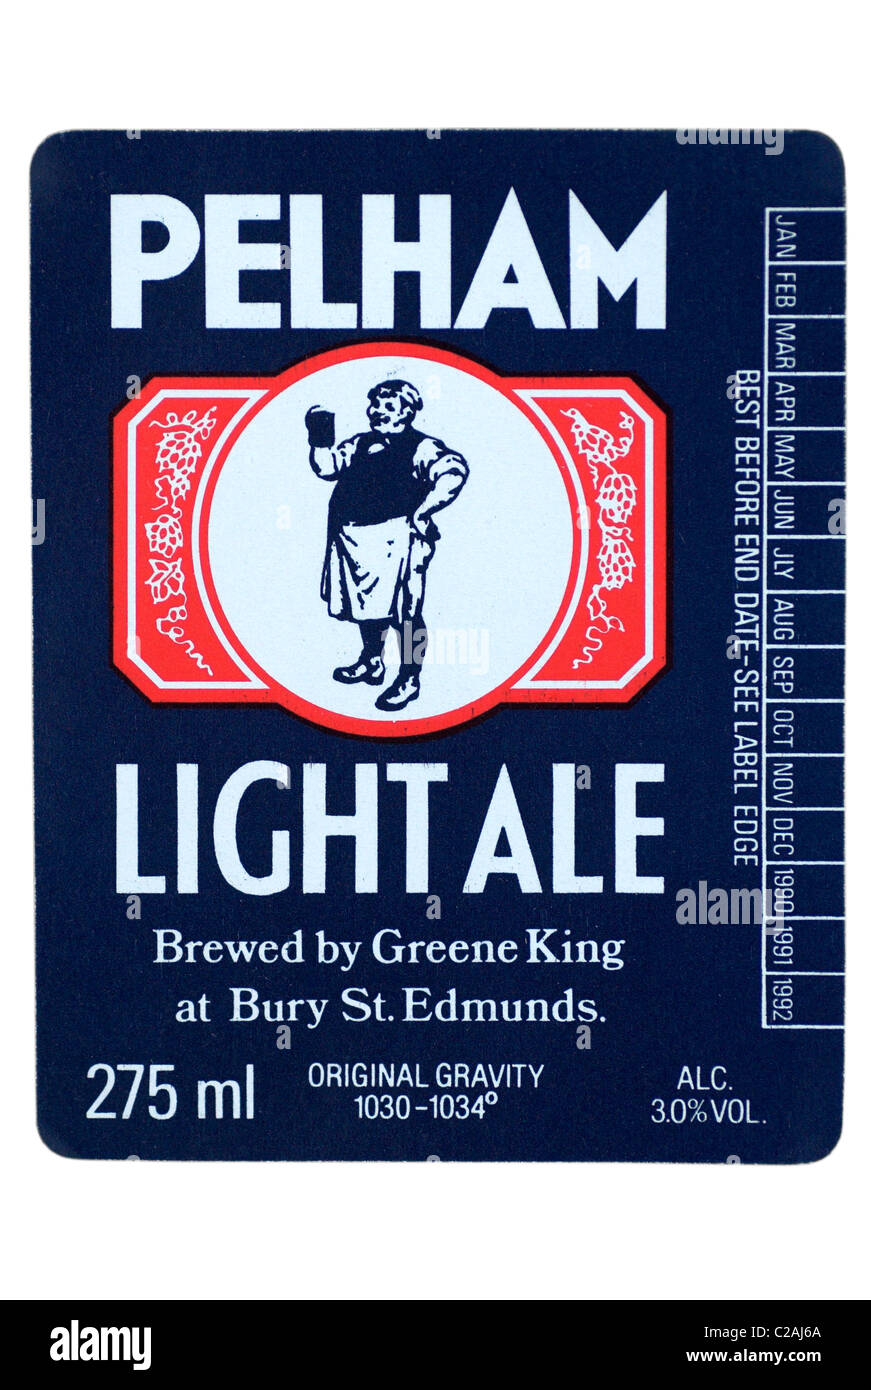 Greene King Pelham Light Ale bottle label - 1990-1992. Stock Photo